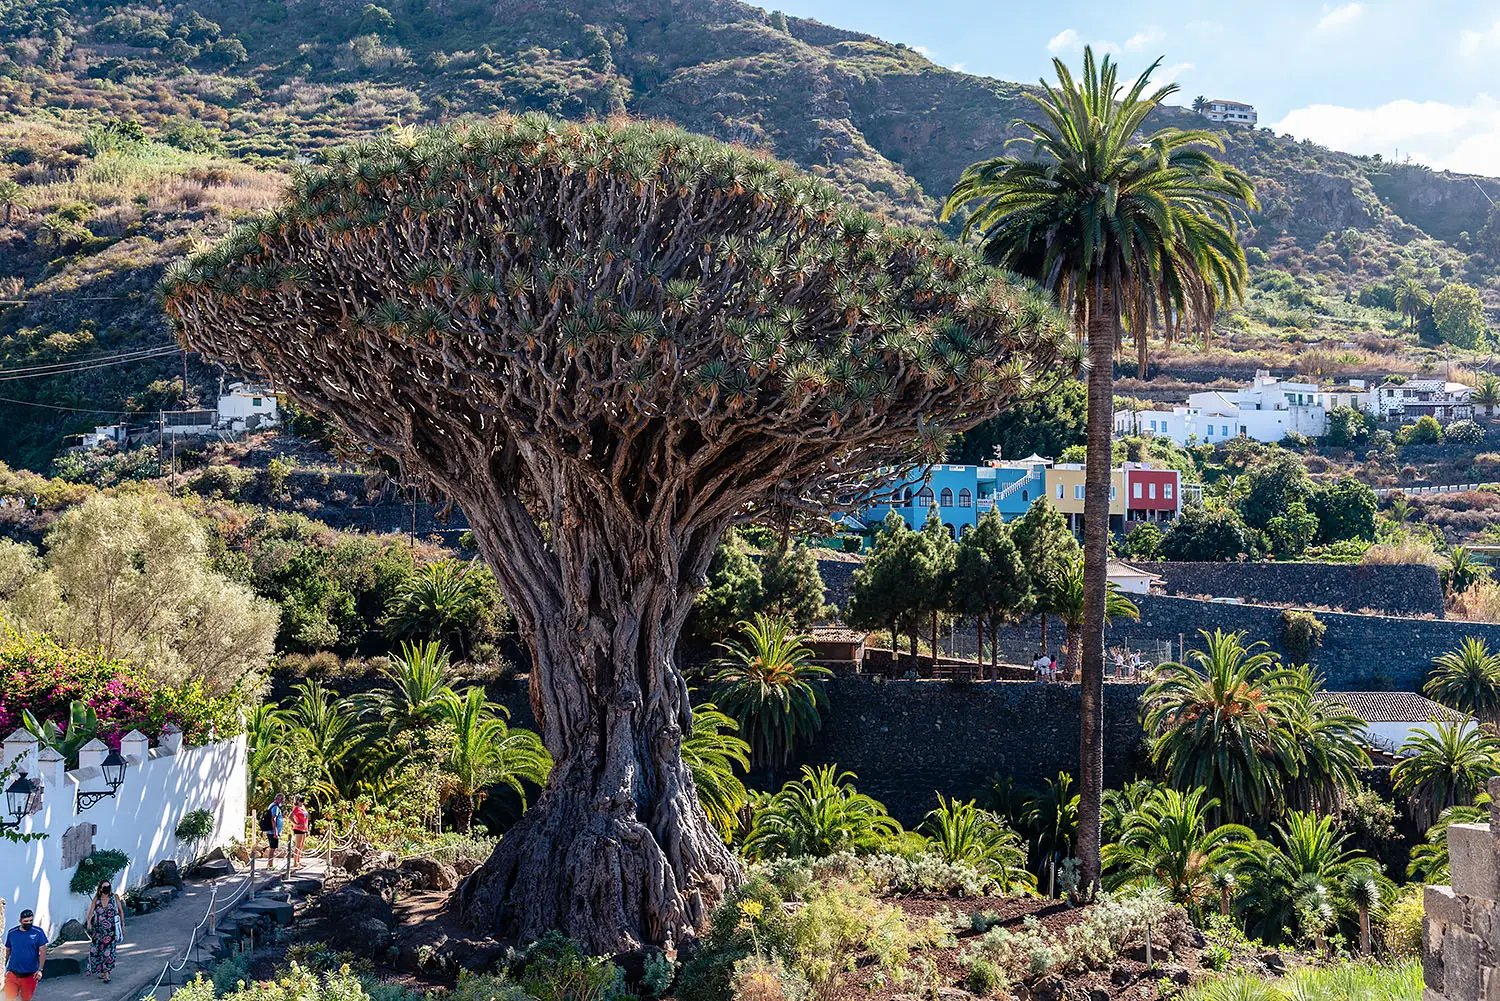 El Drago, the dragon tree in Icod de los Vinos, Tenerife